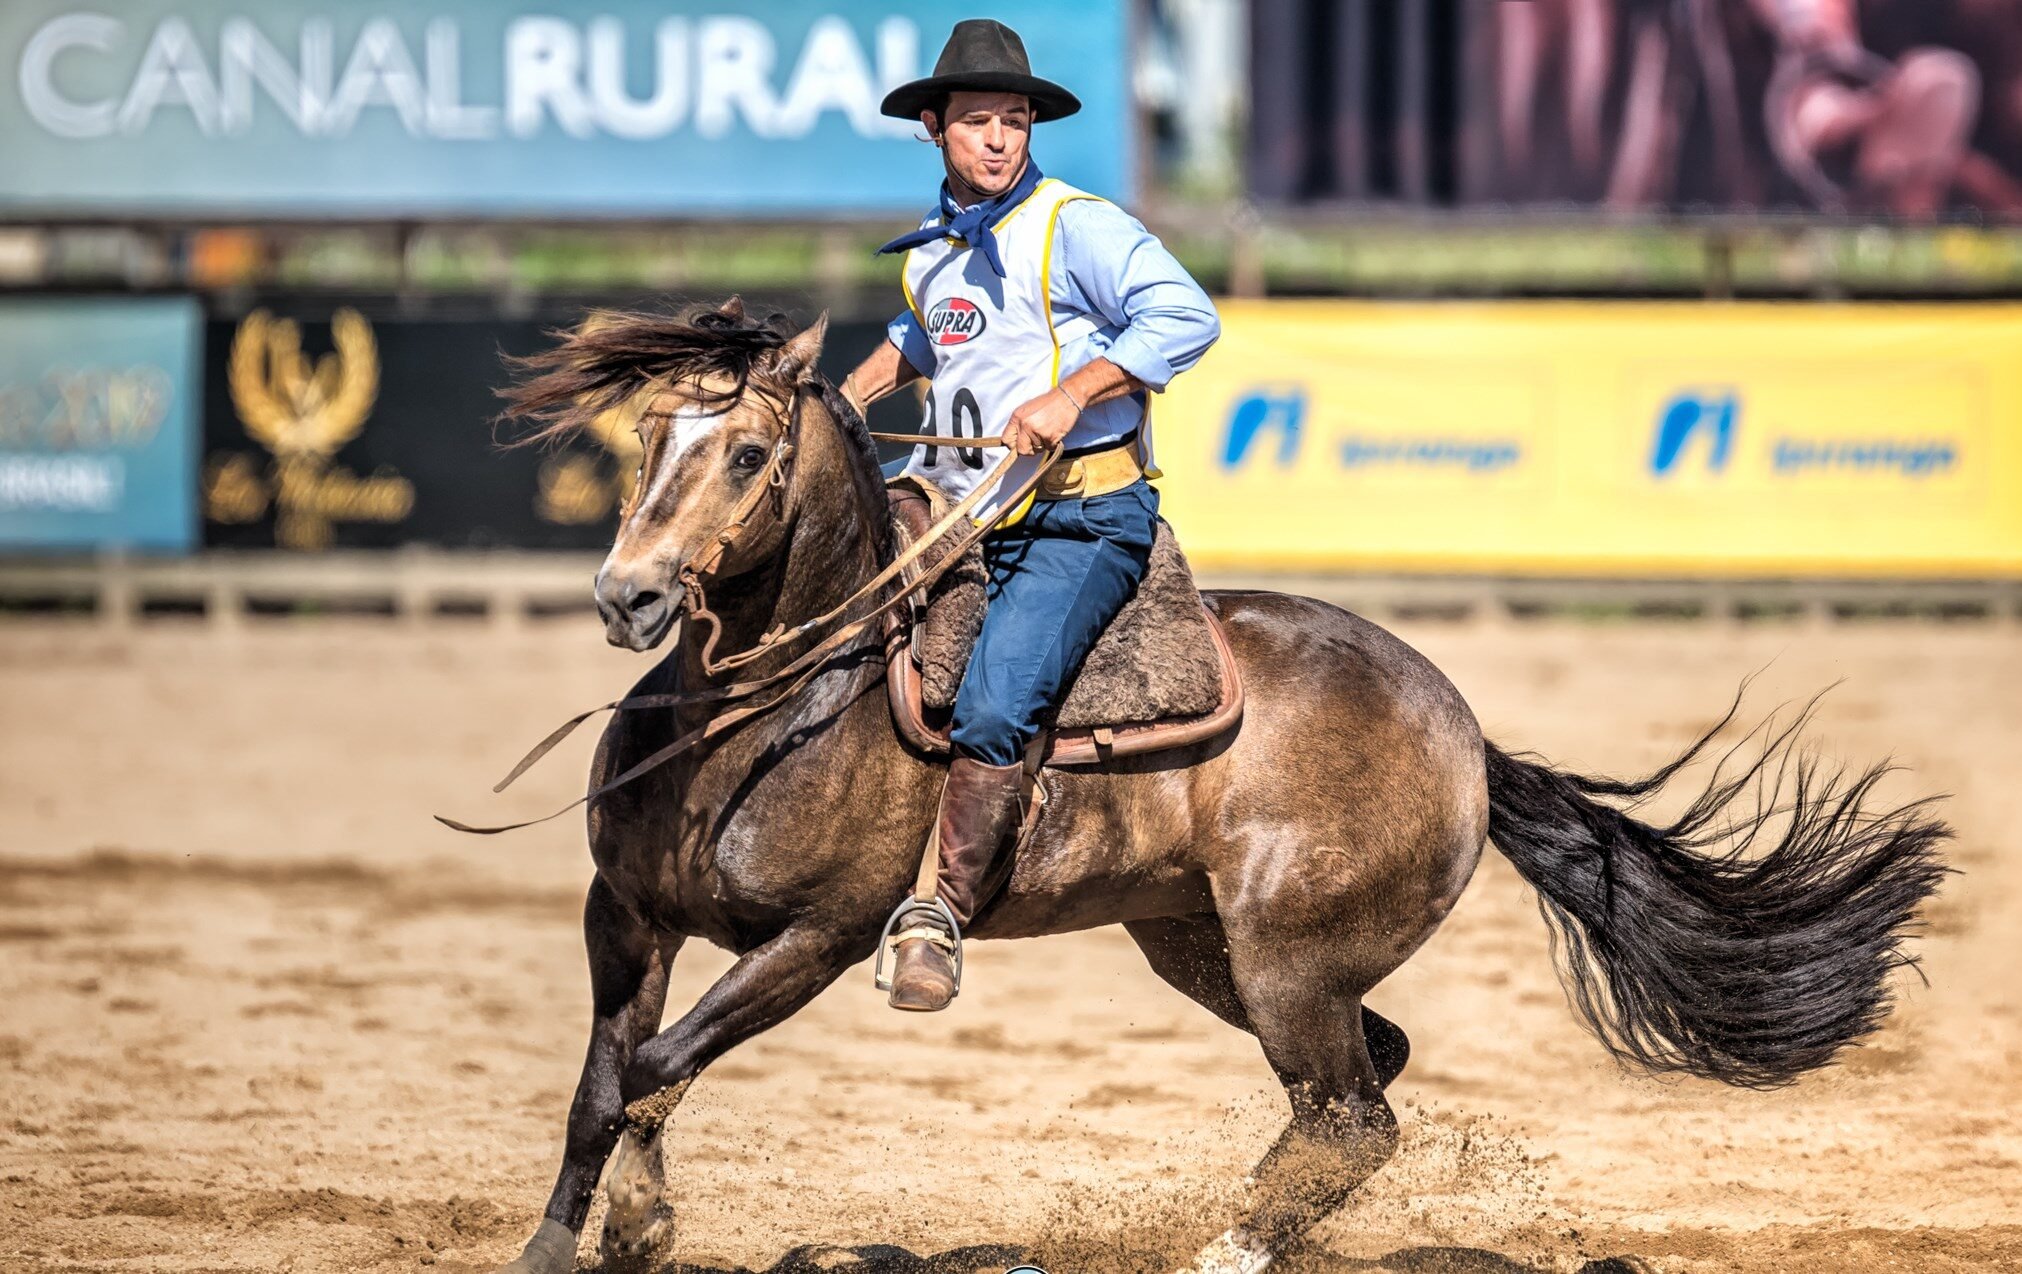 Cavalo crioulo Quicio Tupambaé, campeão da Classificatória Aberta de Esteio (RS)